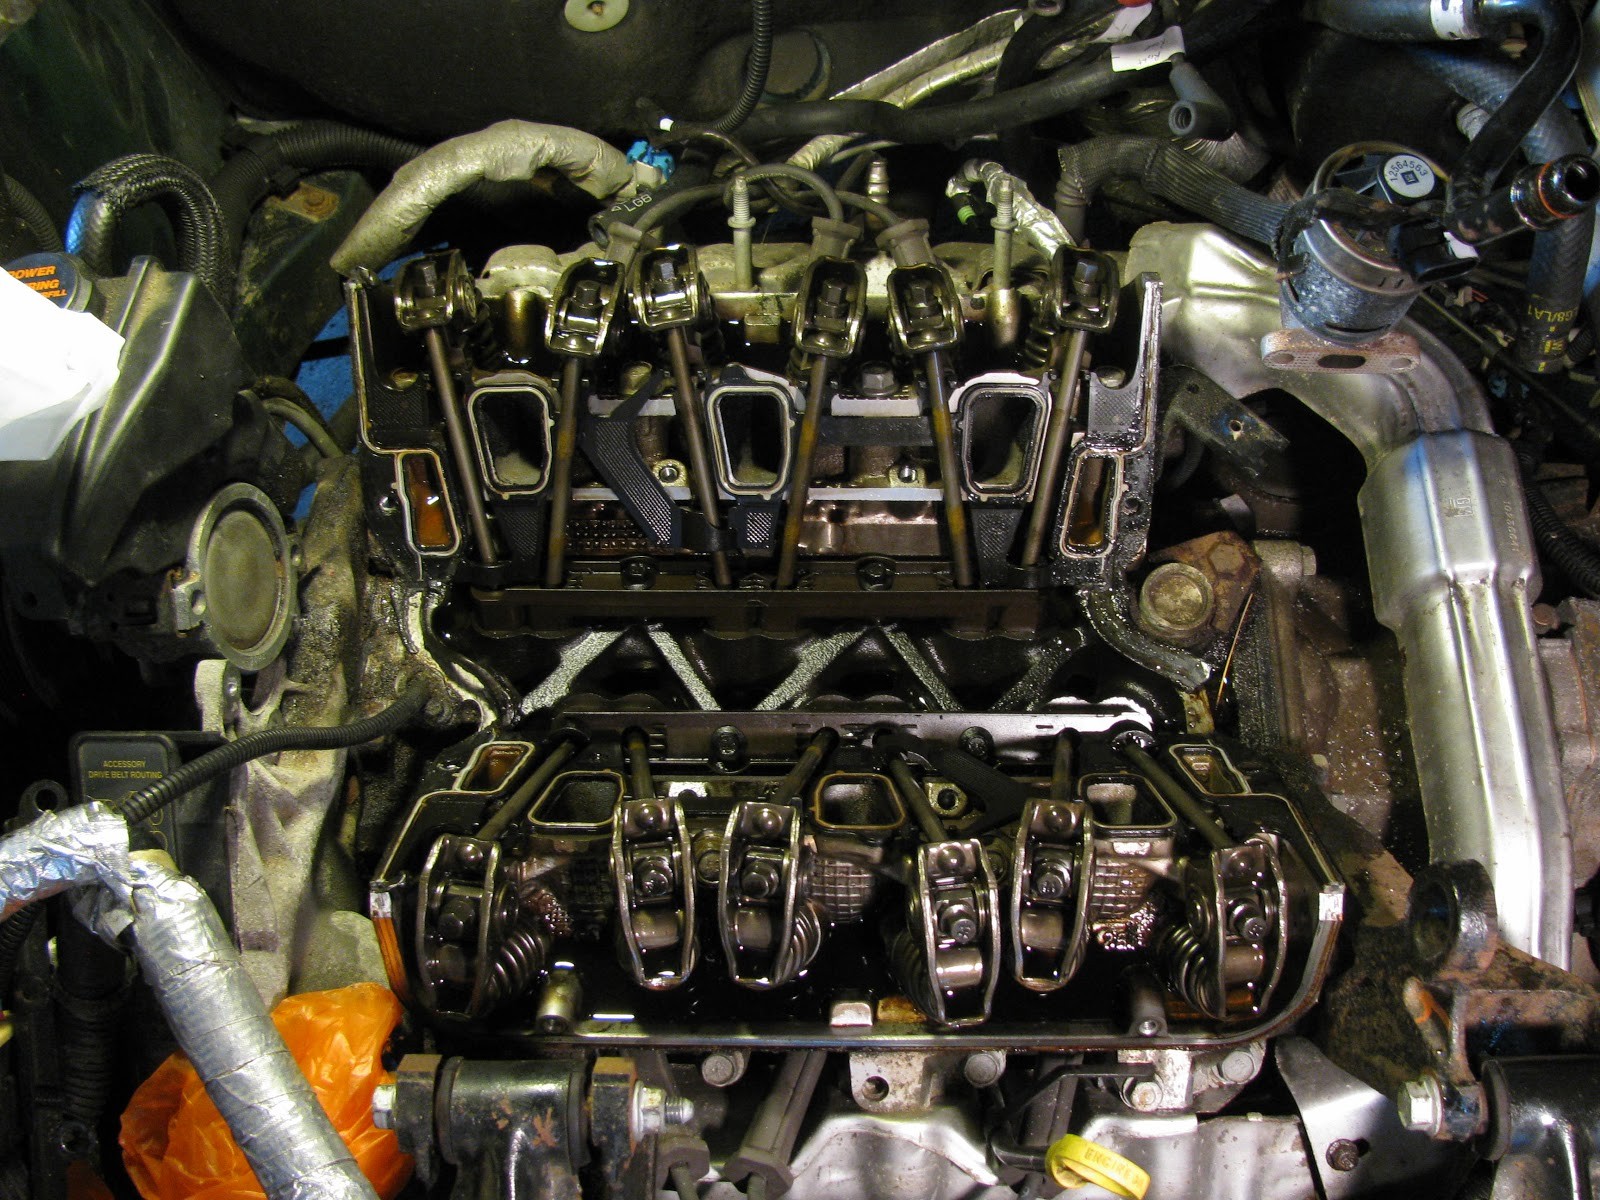 2000 Pontiac Grand Am Gt Engine Diagram the original Mechanic 3 1l Engine Gm Replacing Intake Manifold Of 2000 Pontiac Grand Am Gt Engine Diagram